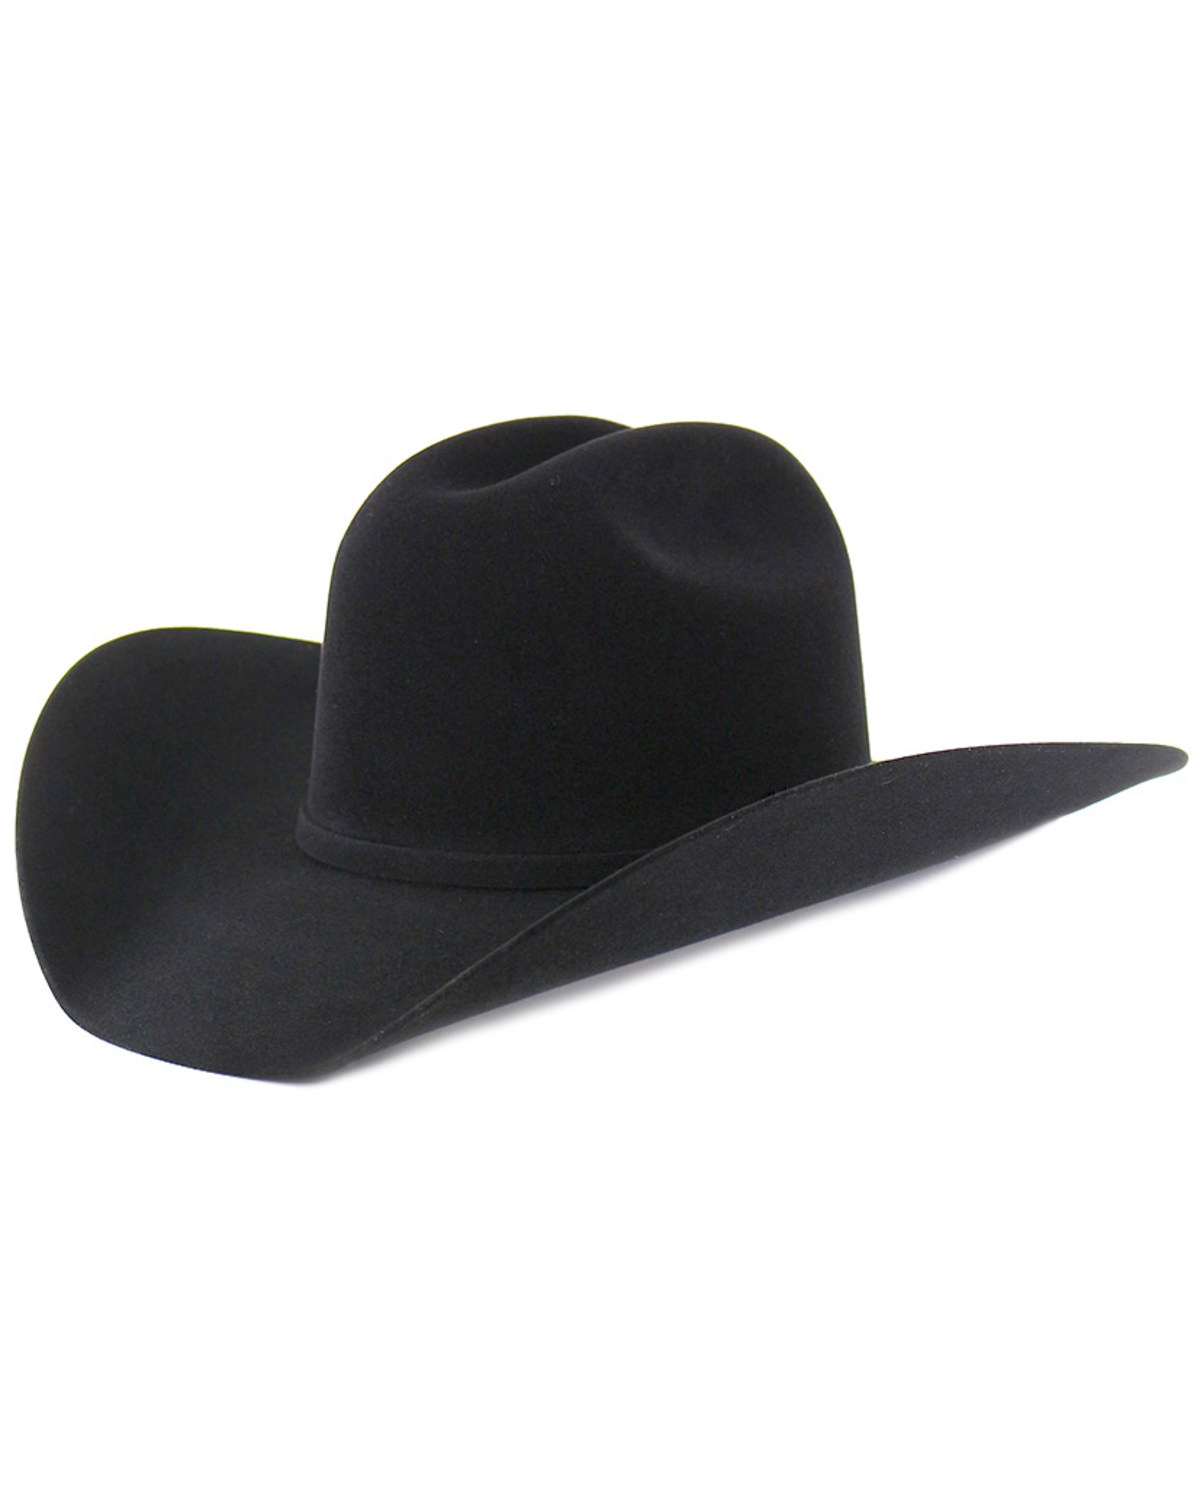 Cody James 10X Felt Cowboy Hat